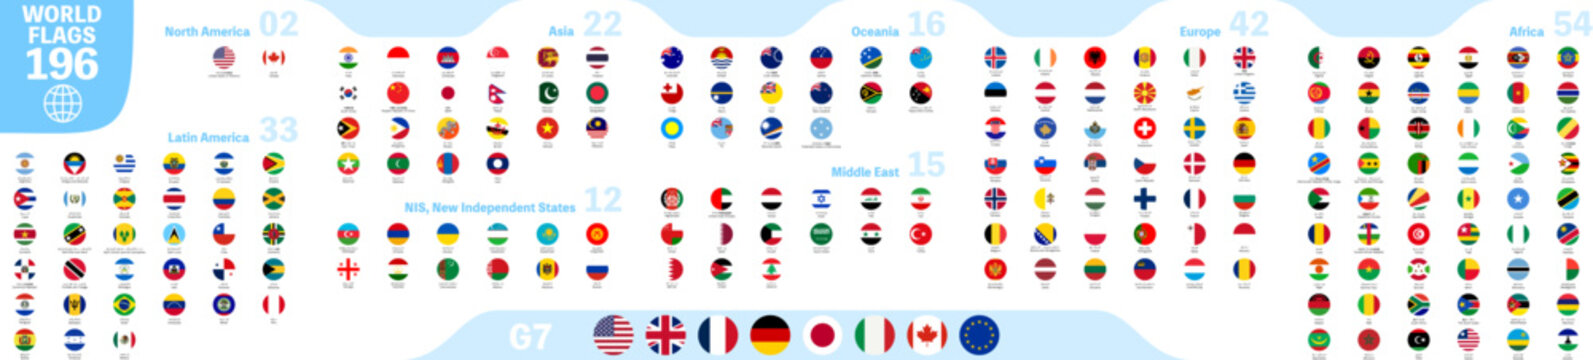 世界の国旗アイコン（地域別）、196ヶ国セット